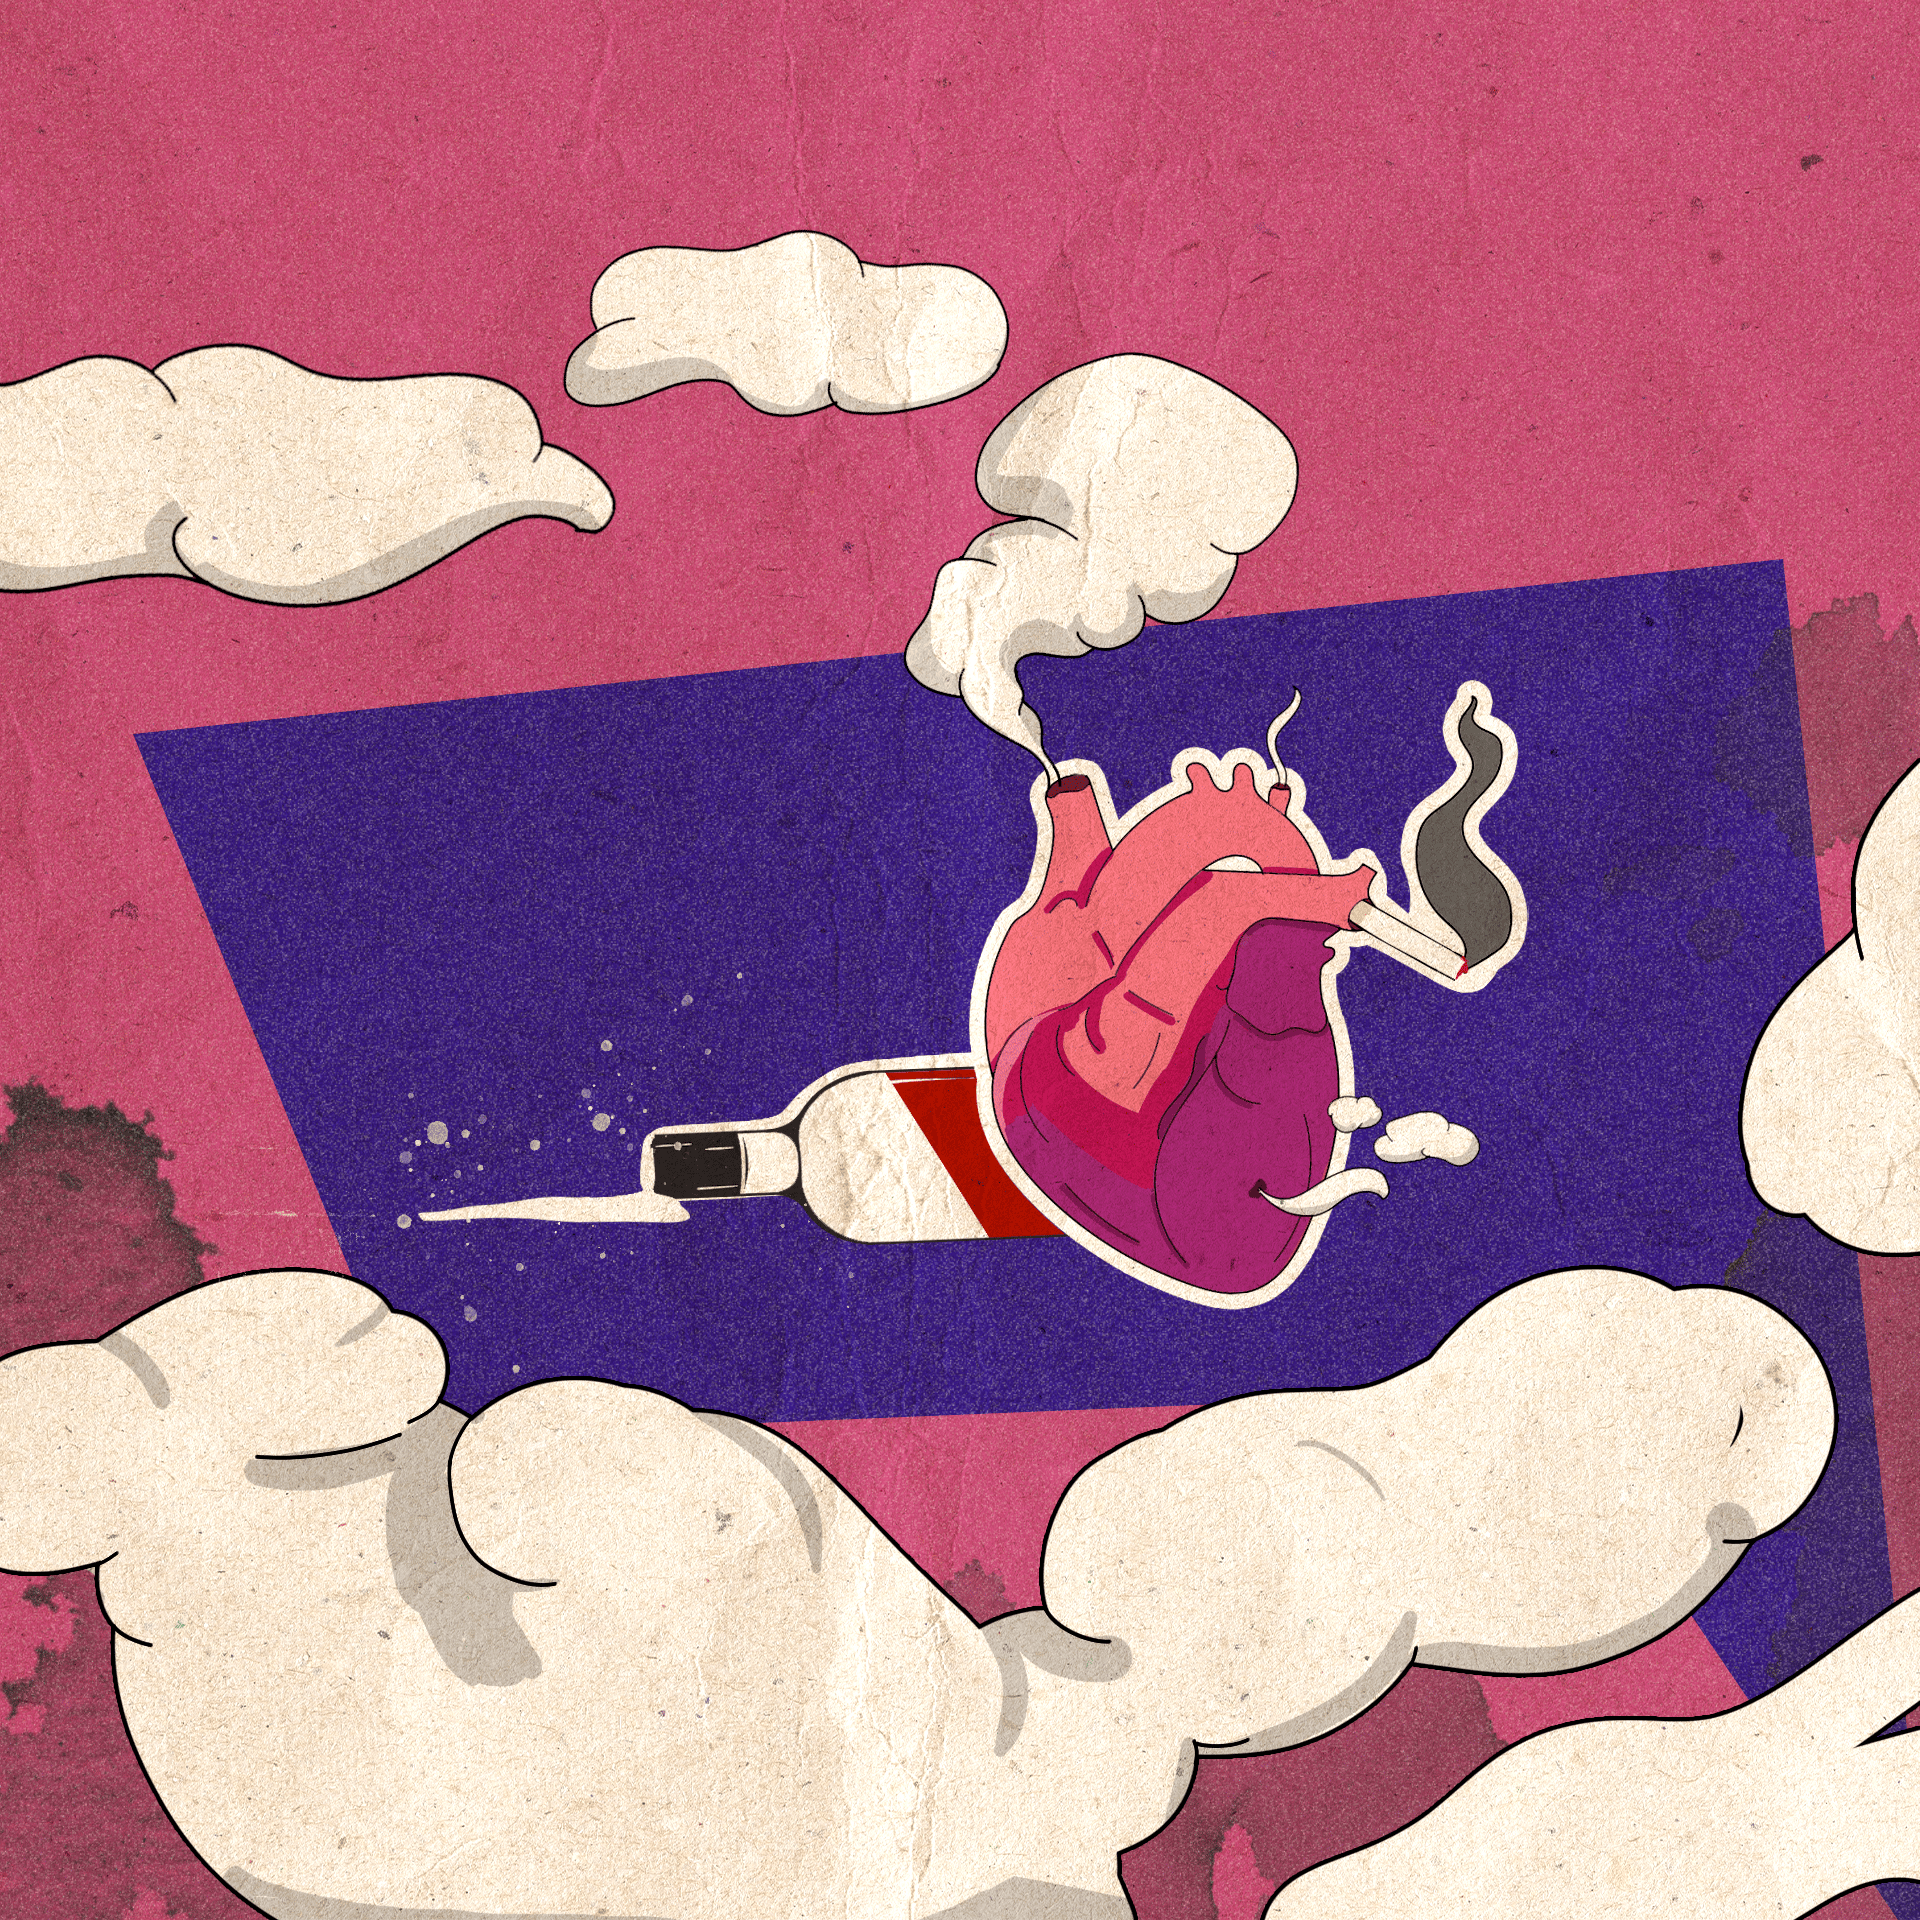 Ilustracja – anatomiczne serce z dymiącym papierosem wystającym z jednej z żył, dymem wydobywającym się z jednej z tętnic, w tle leży butelka z wylanym alkoholem